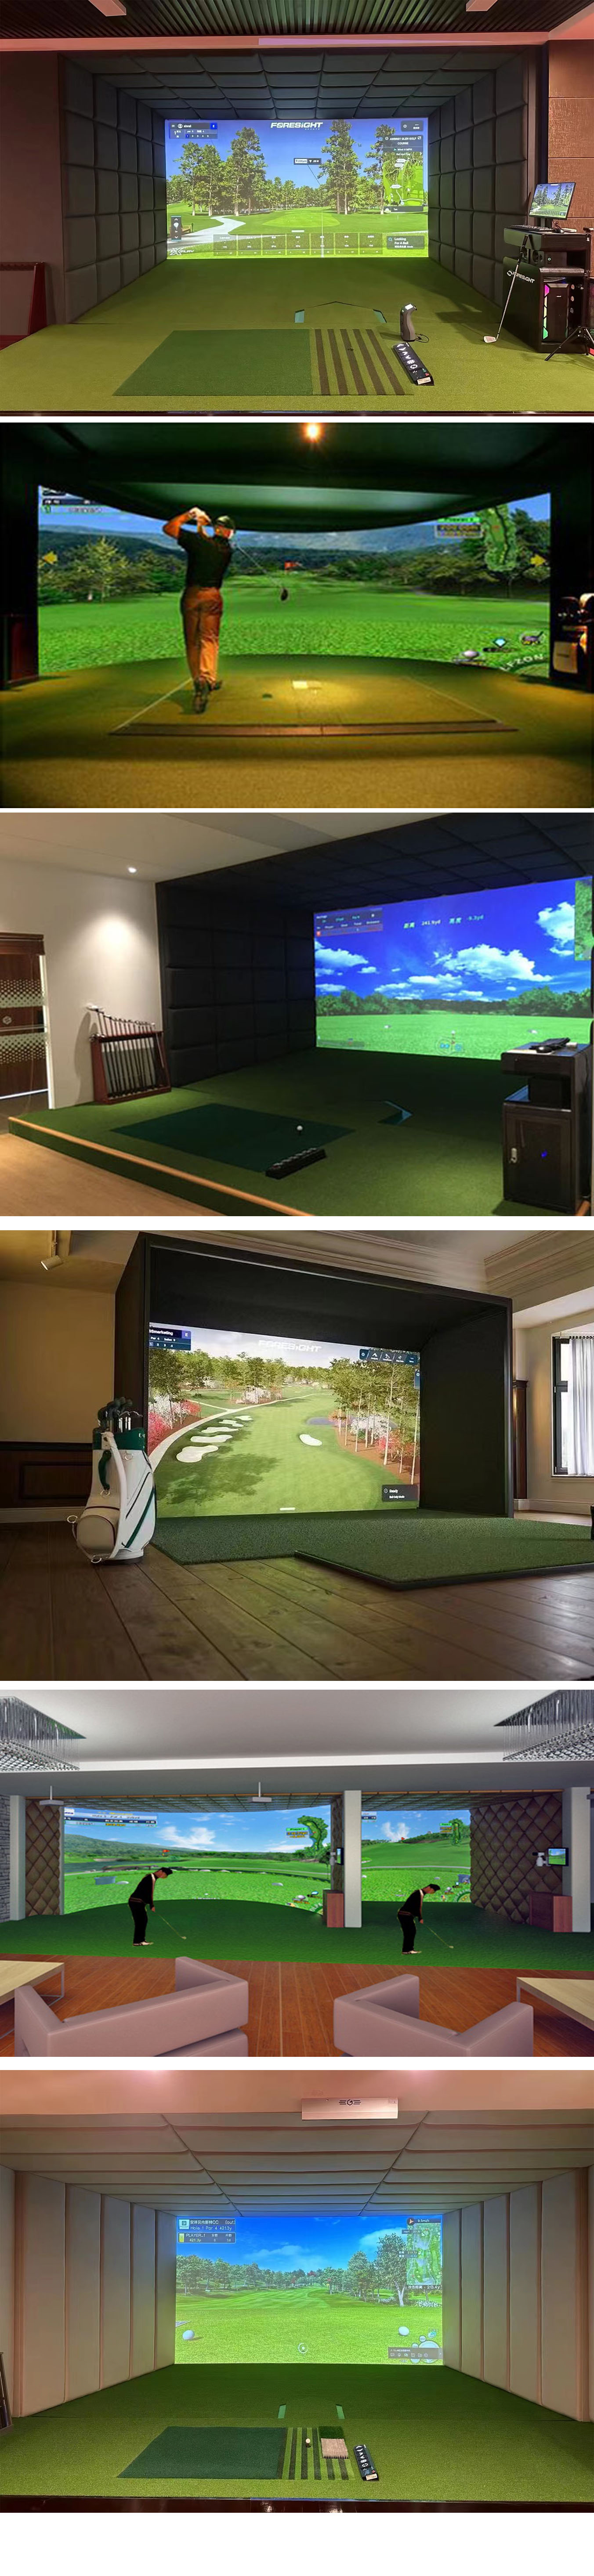 室内模拟高尔夫练习场系统 一.jpg